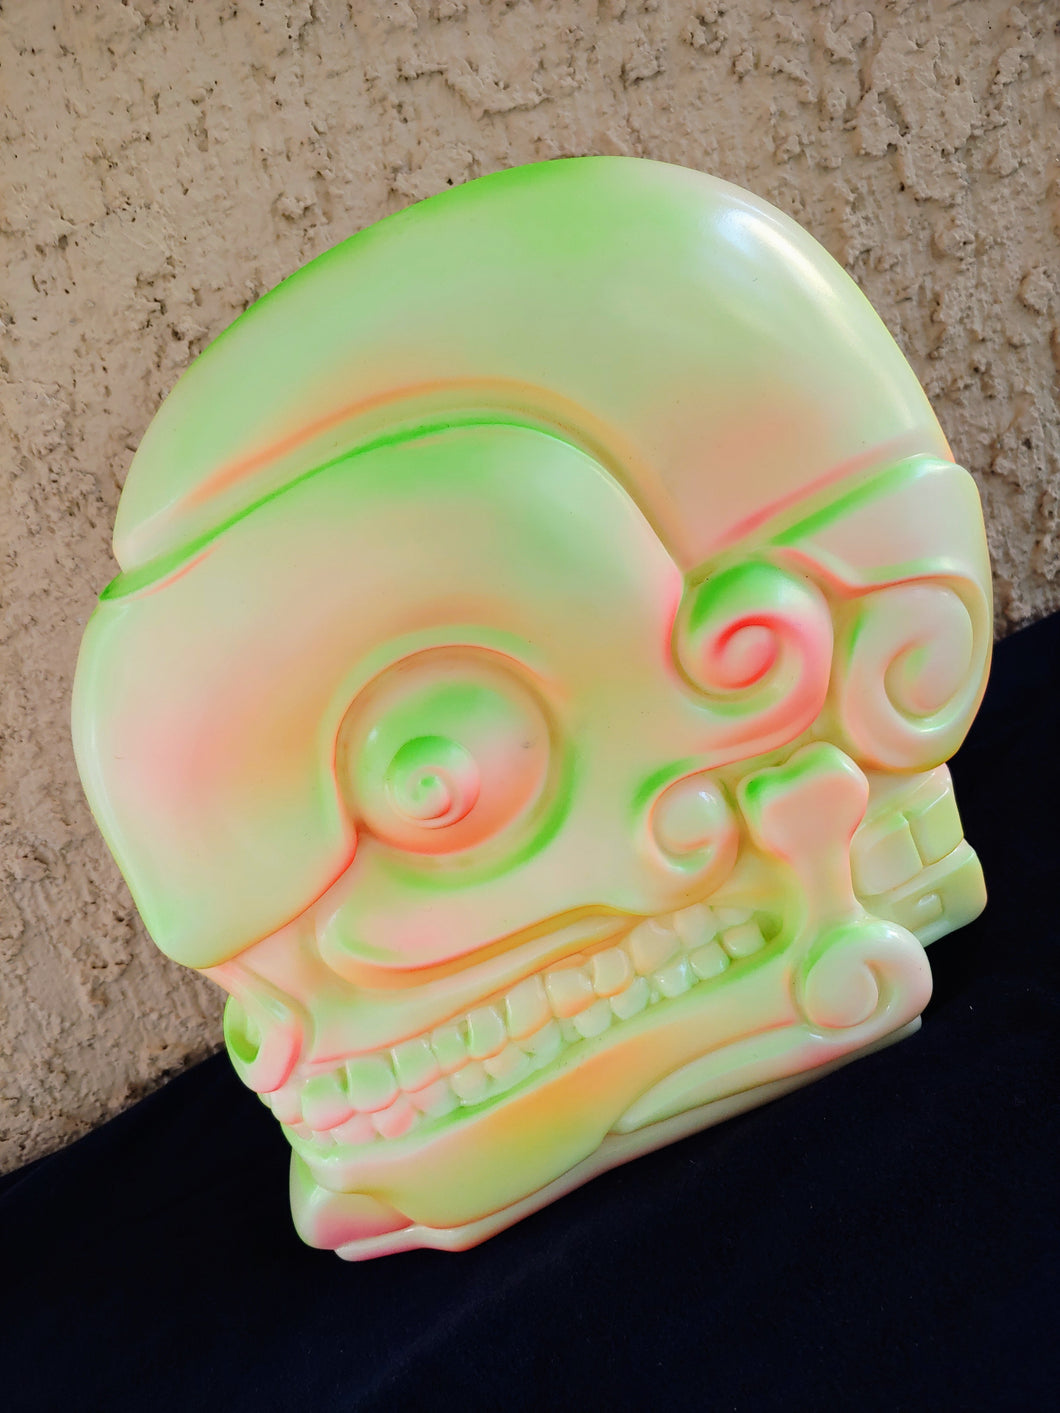 Totonac Head - Glow Zone by Frank Mysterio